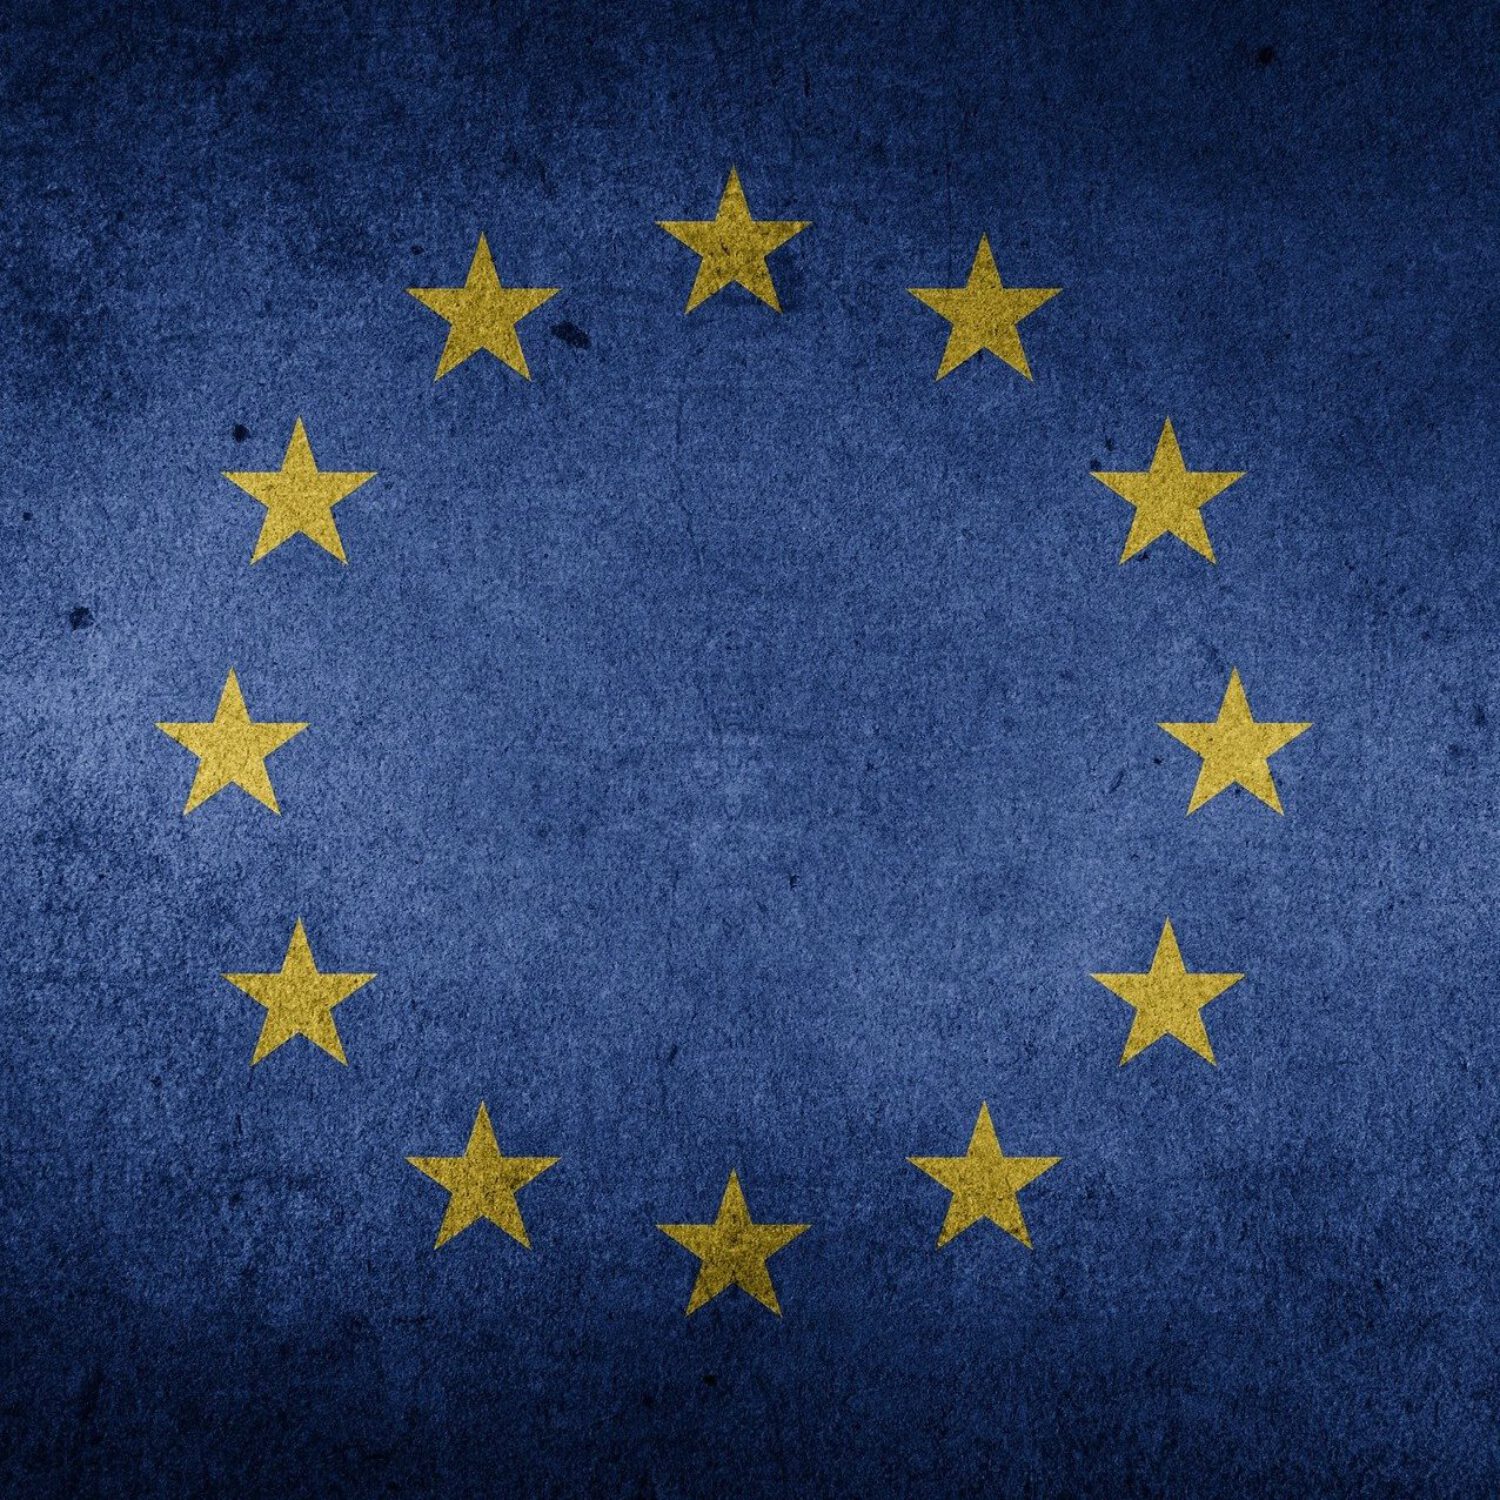 Die Zukunft der Europäischen Union